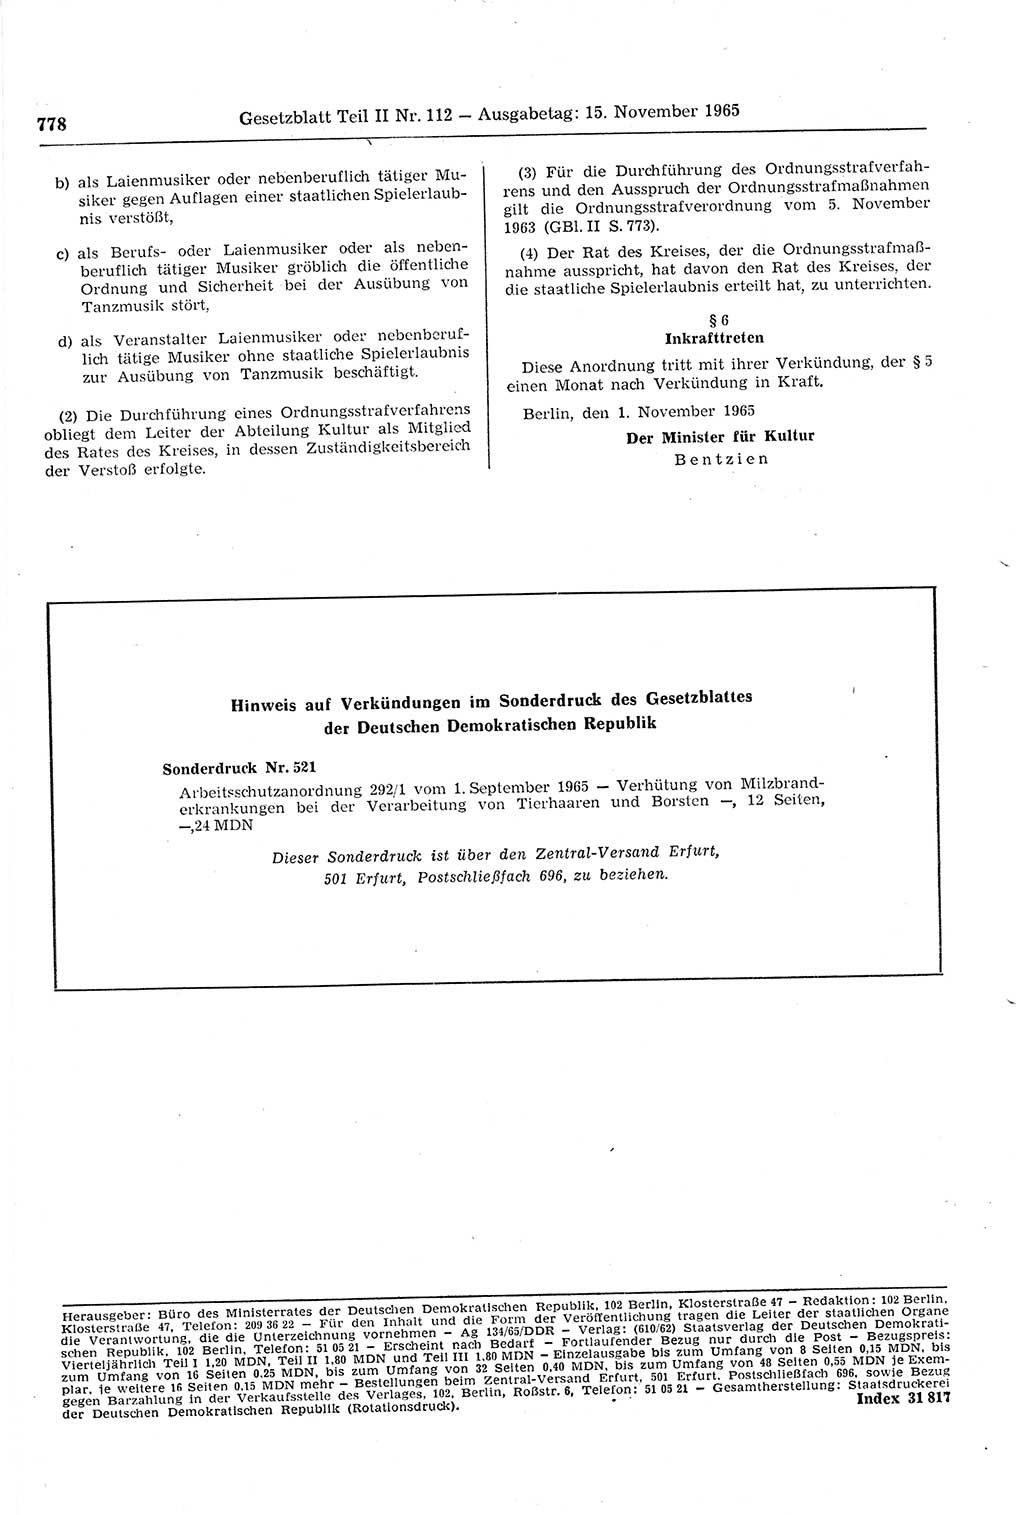 Gesetzblatt (GBl.) der Deutschen Demokratischen Republik (DDR) Teil ⅠⅠ 1965, Seite 778 (GBl. DDR ⅠⅠ 1965, S. 778)